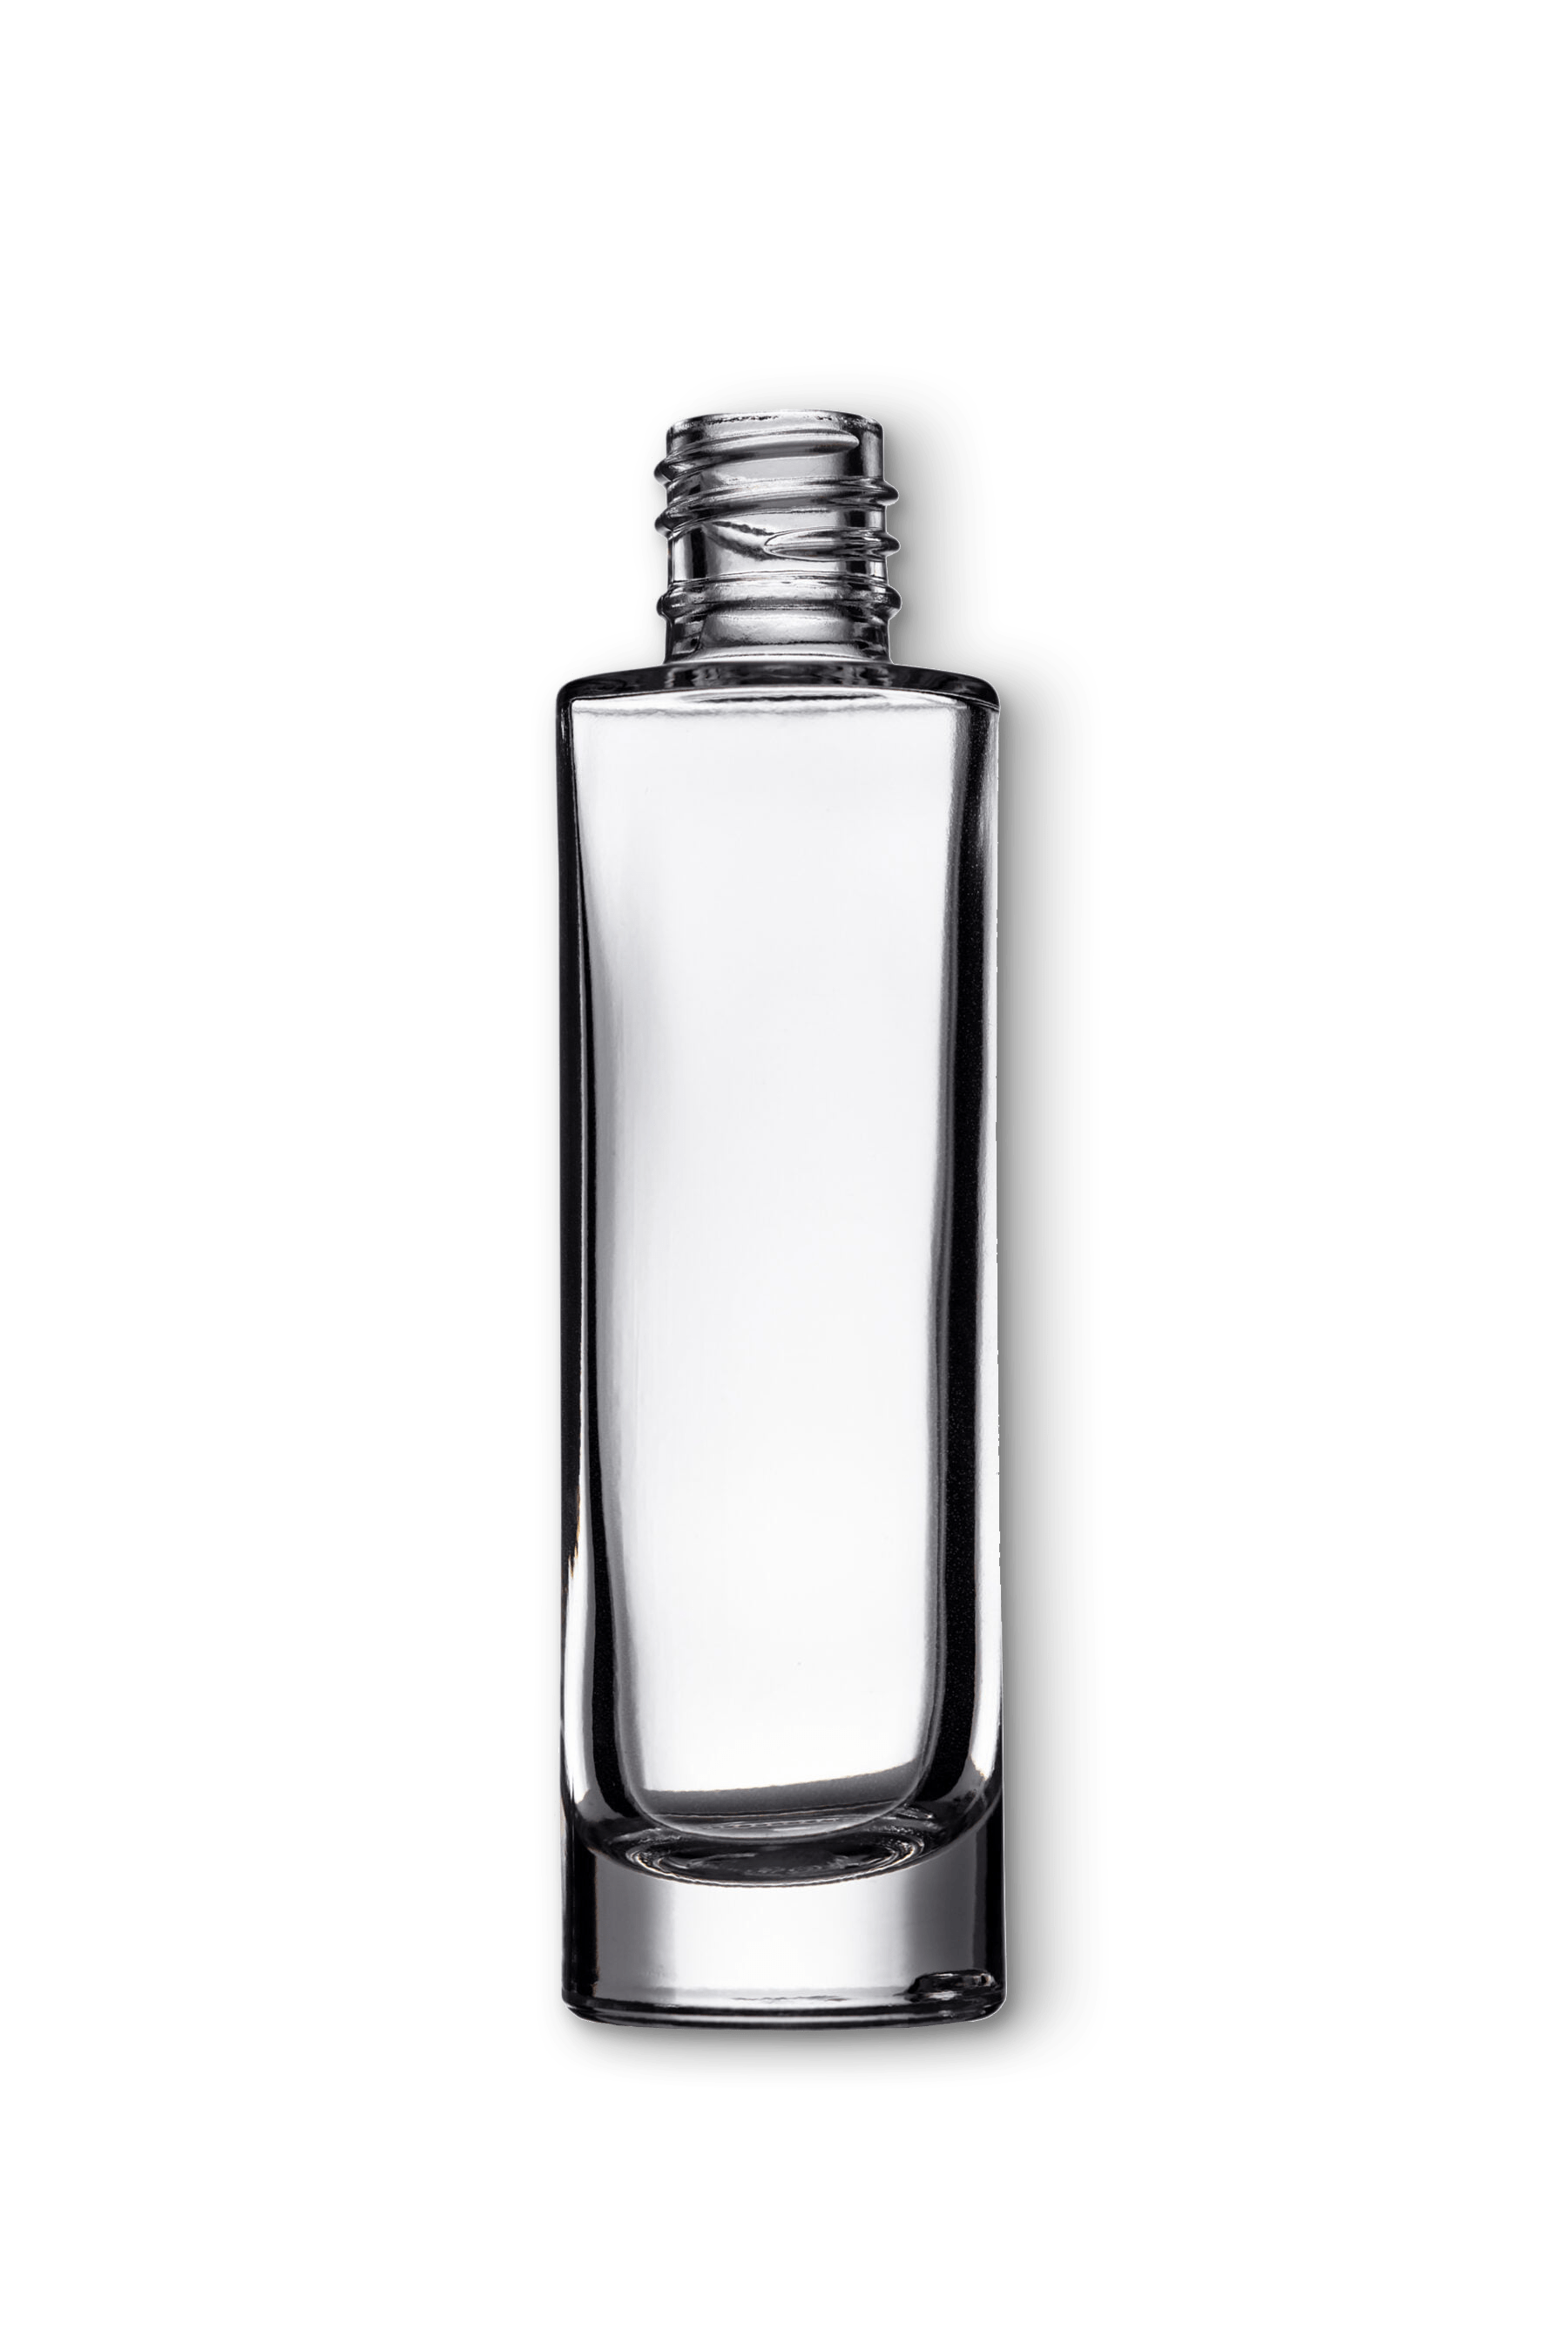 Оригинални парфюми - как успешно да ги различим от репликите?